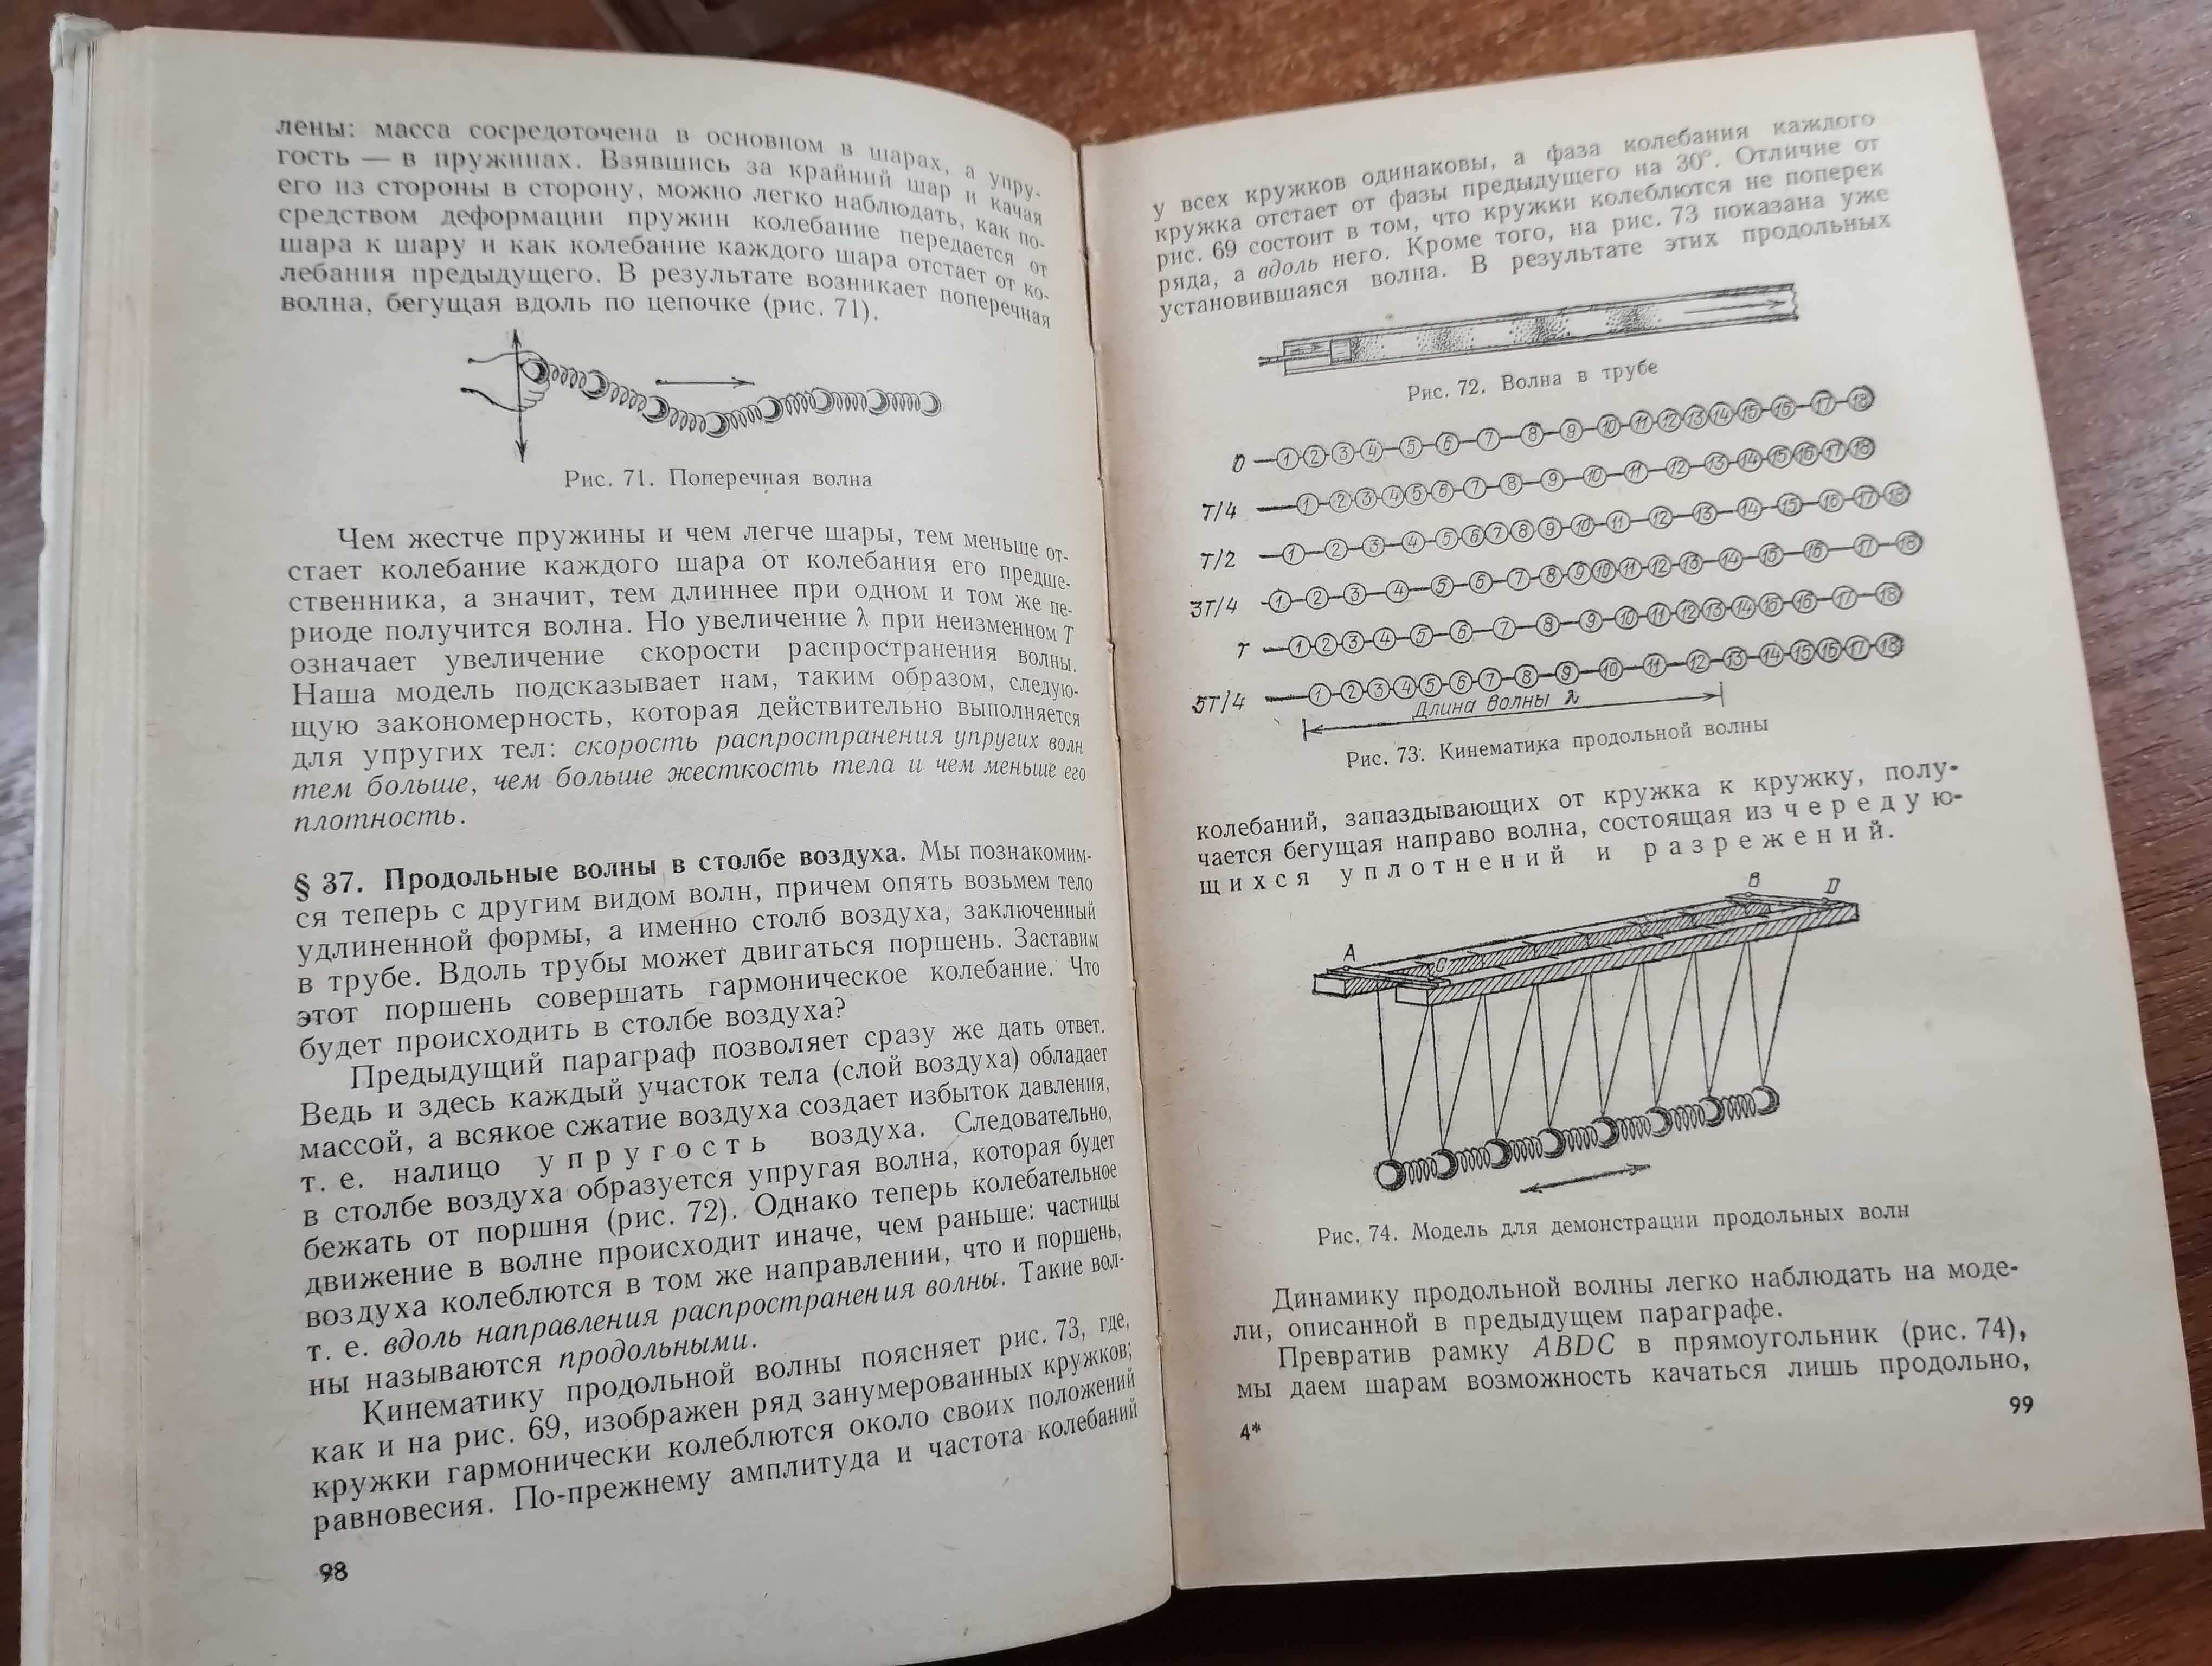 Элементарный учебник физики Ландсберг (Изд. 10-ое, 1986 г.)